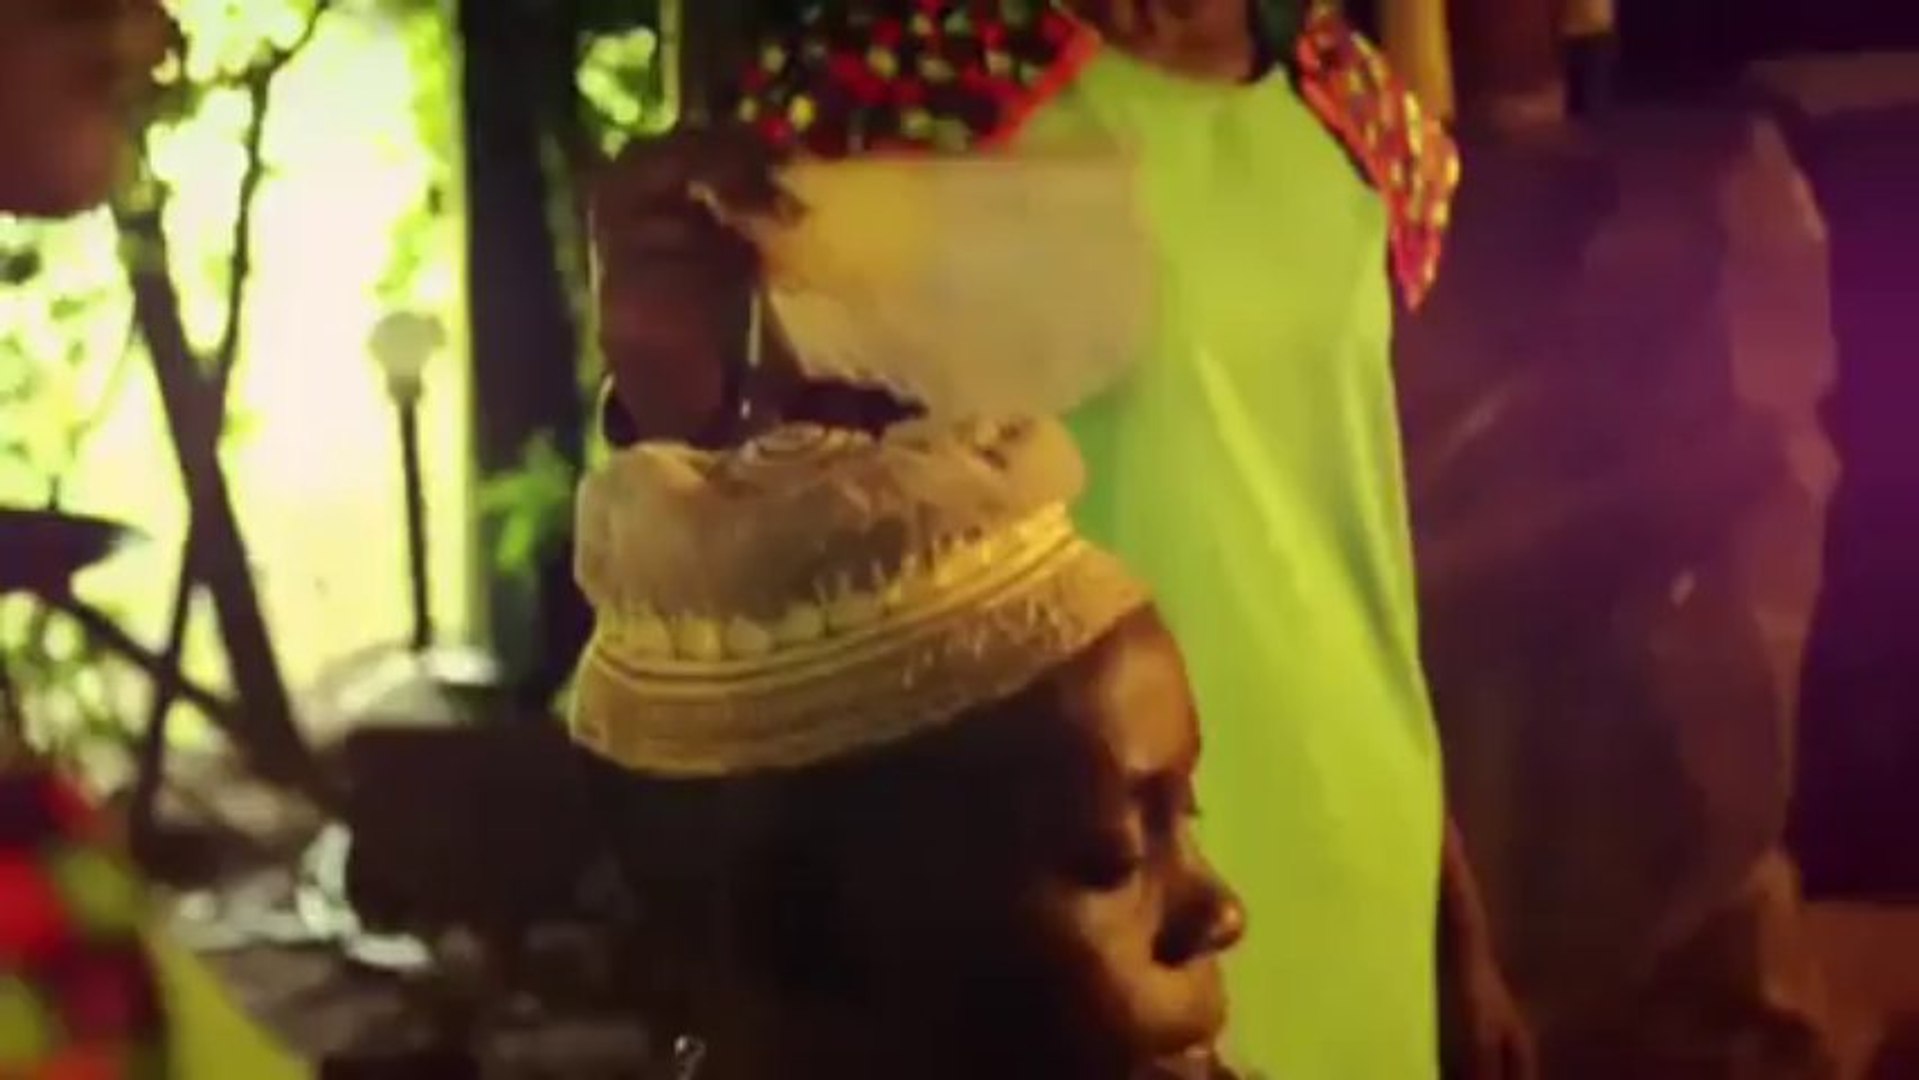 Mulangira - Evah New Ugandan music video